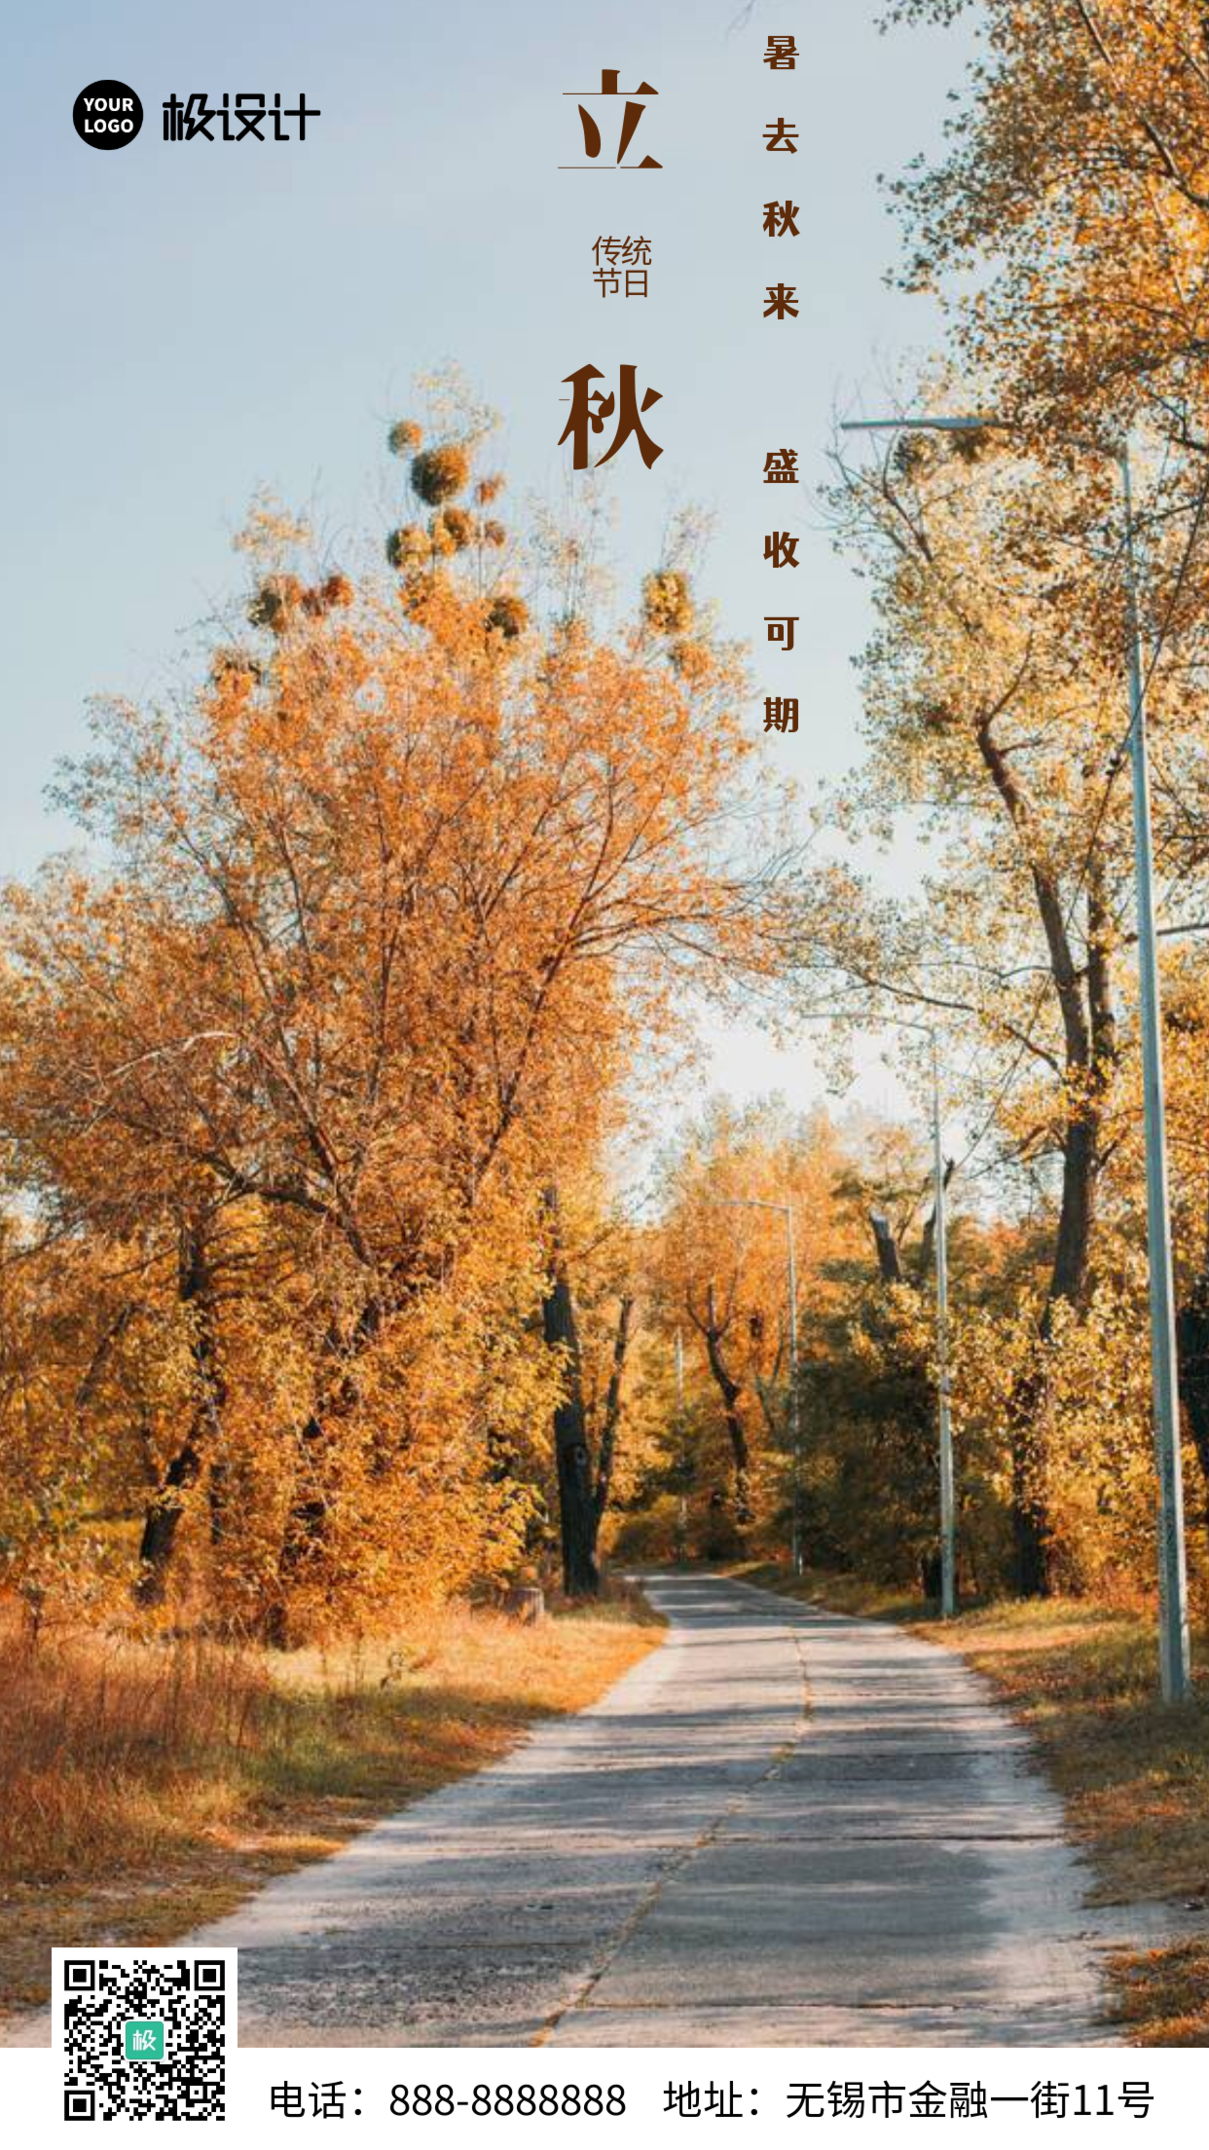 黄色树叶背景立秋祝福问候摄影图海报